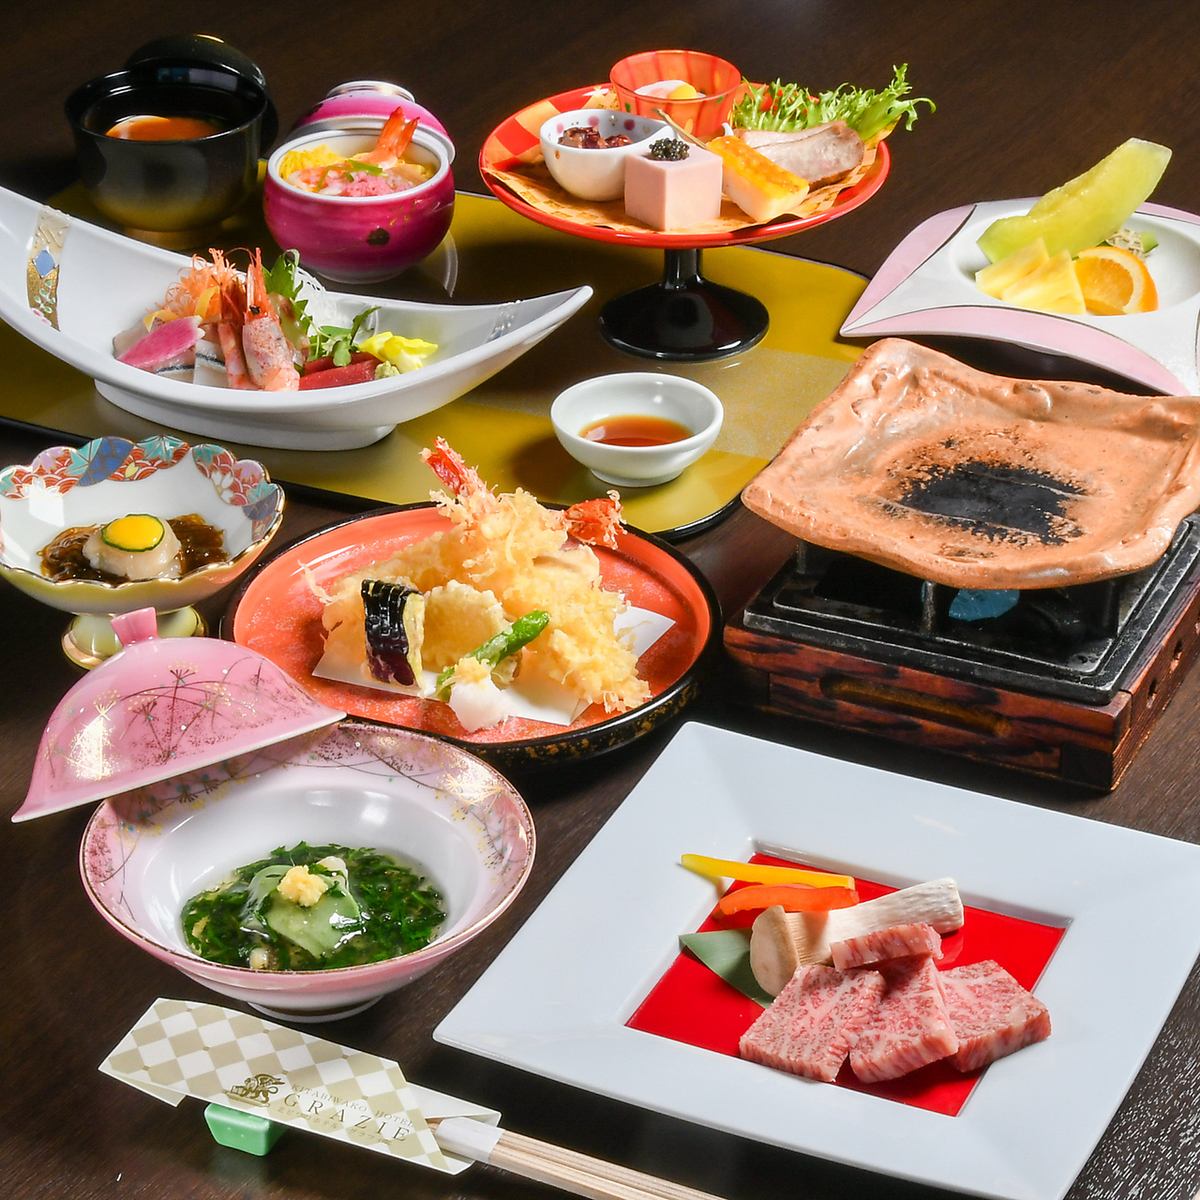 繼承老店傳統的可靠味道。可以一邊眺望琵琶湖一邊悠閒地享用日本料理◎